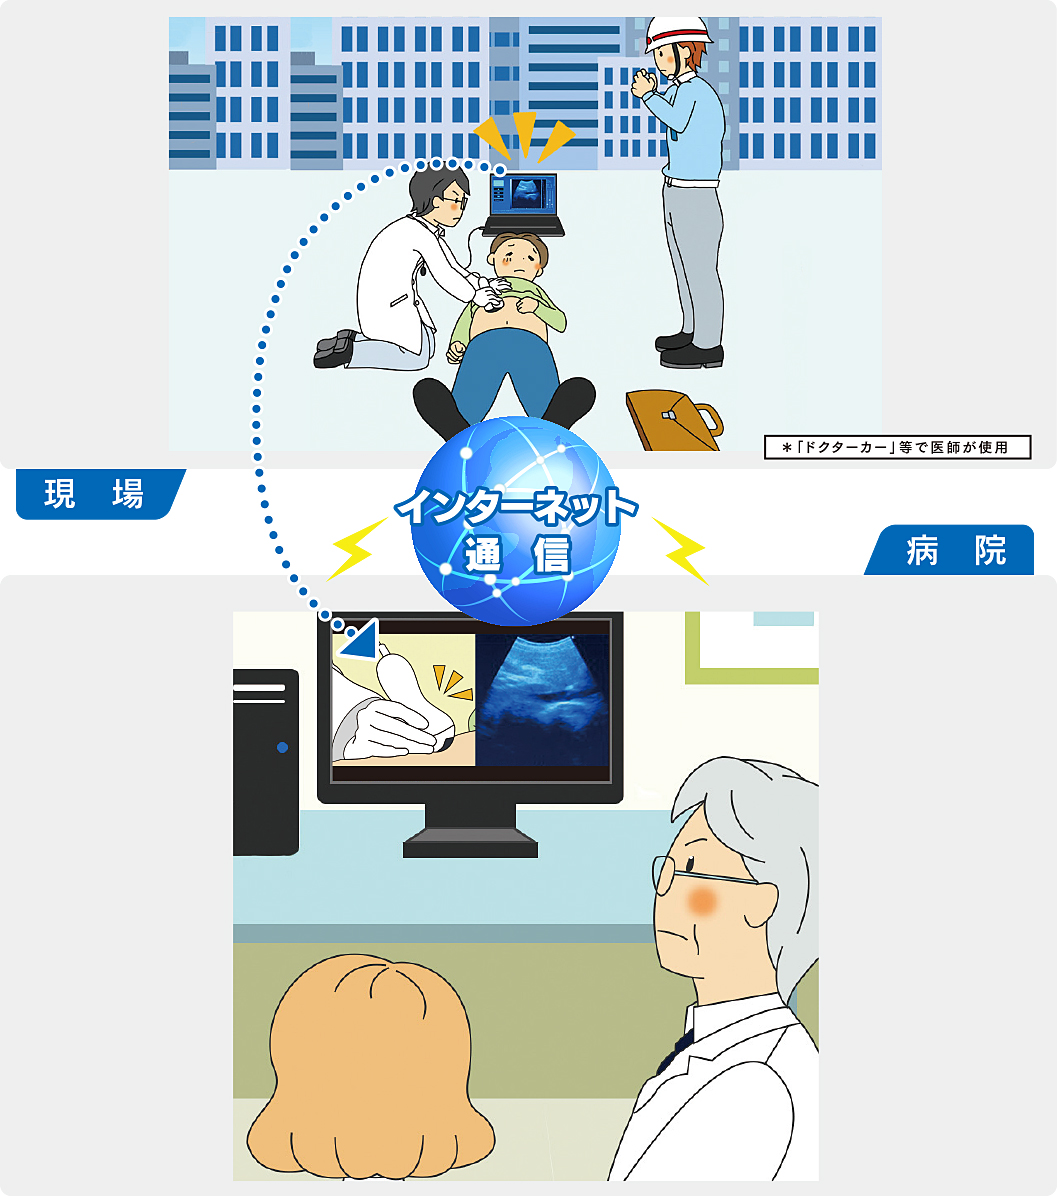 インターネット通信により、現場での超音波画像とプローブ操作部位の映像を病院へ送ることができます。